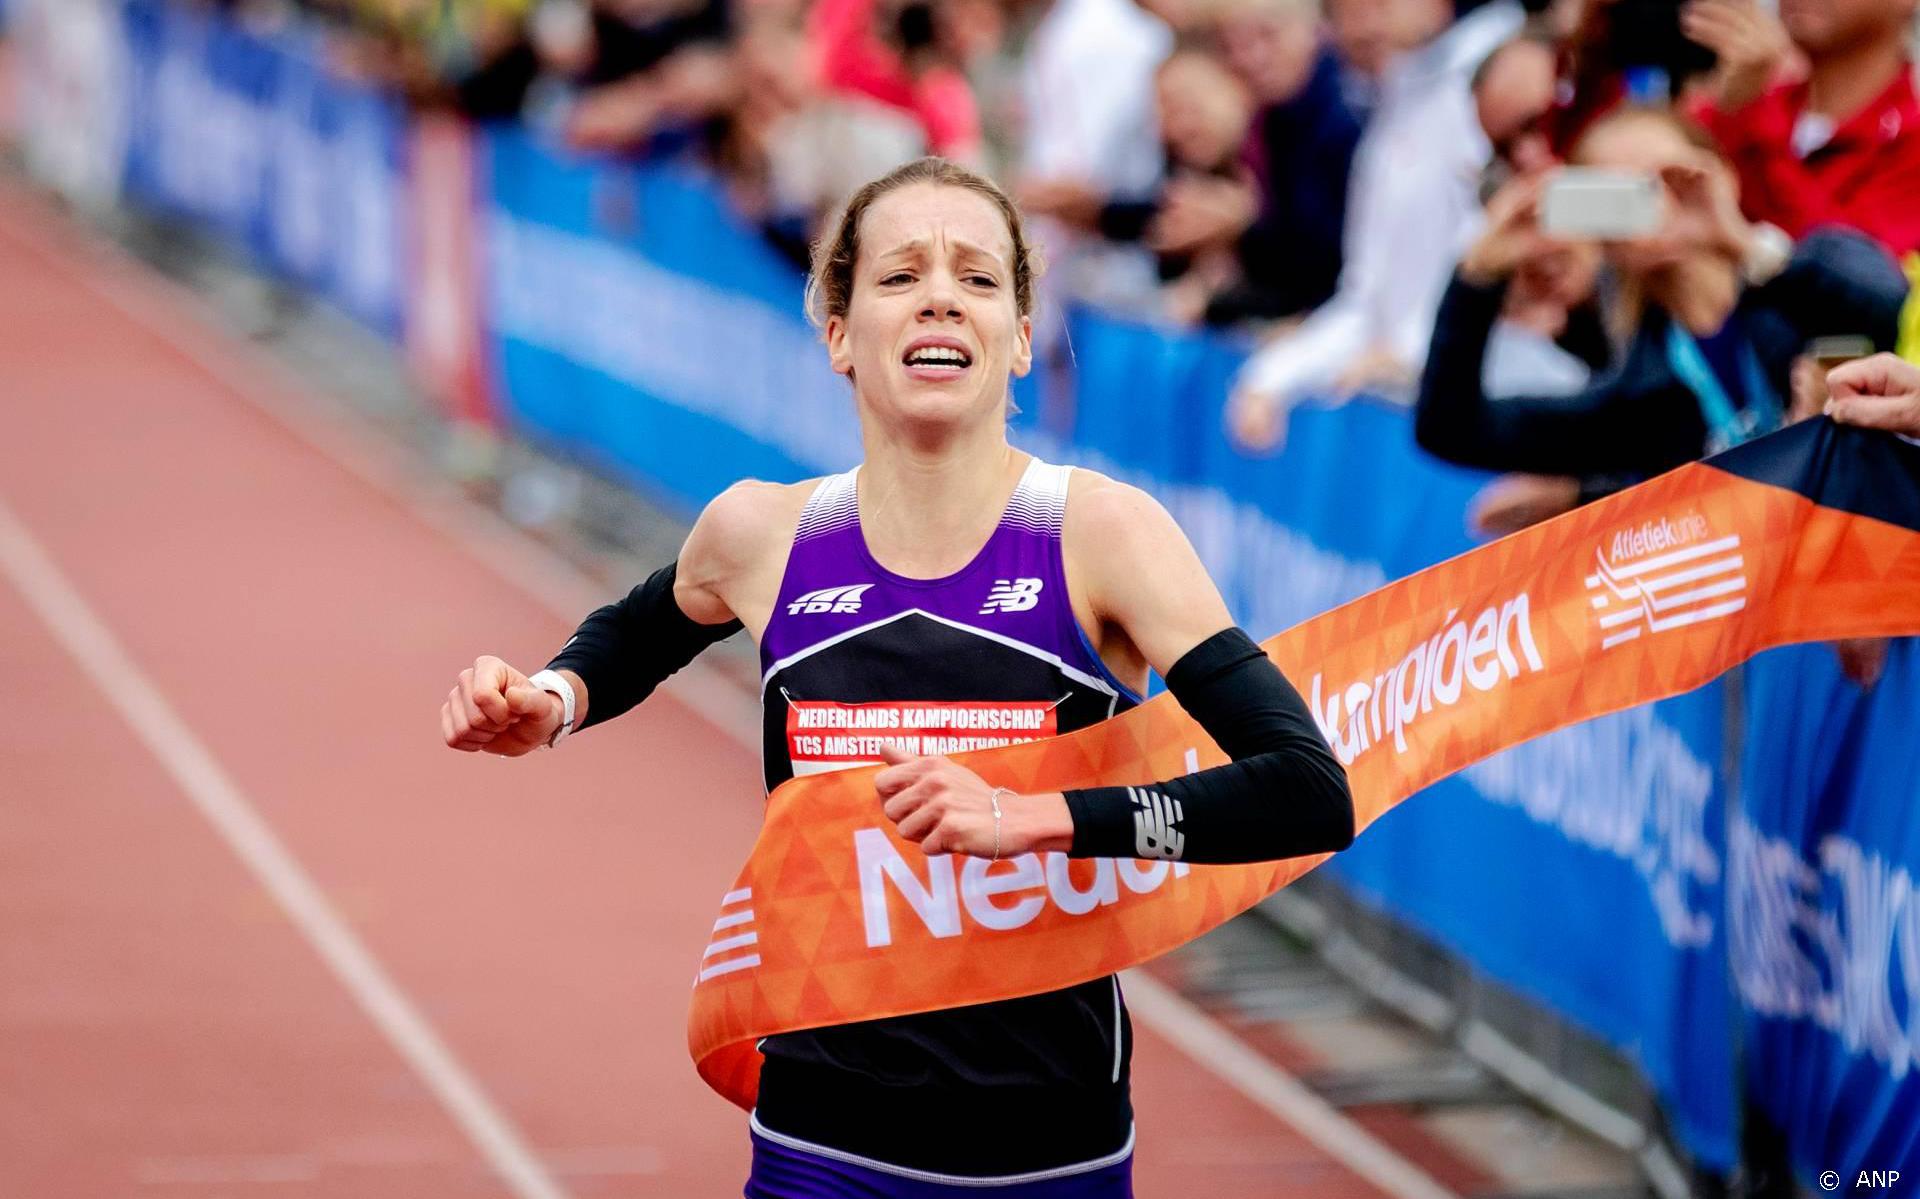 Atlete Ummels mist olympische limiet in marathon Londen